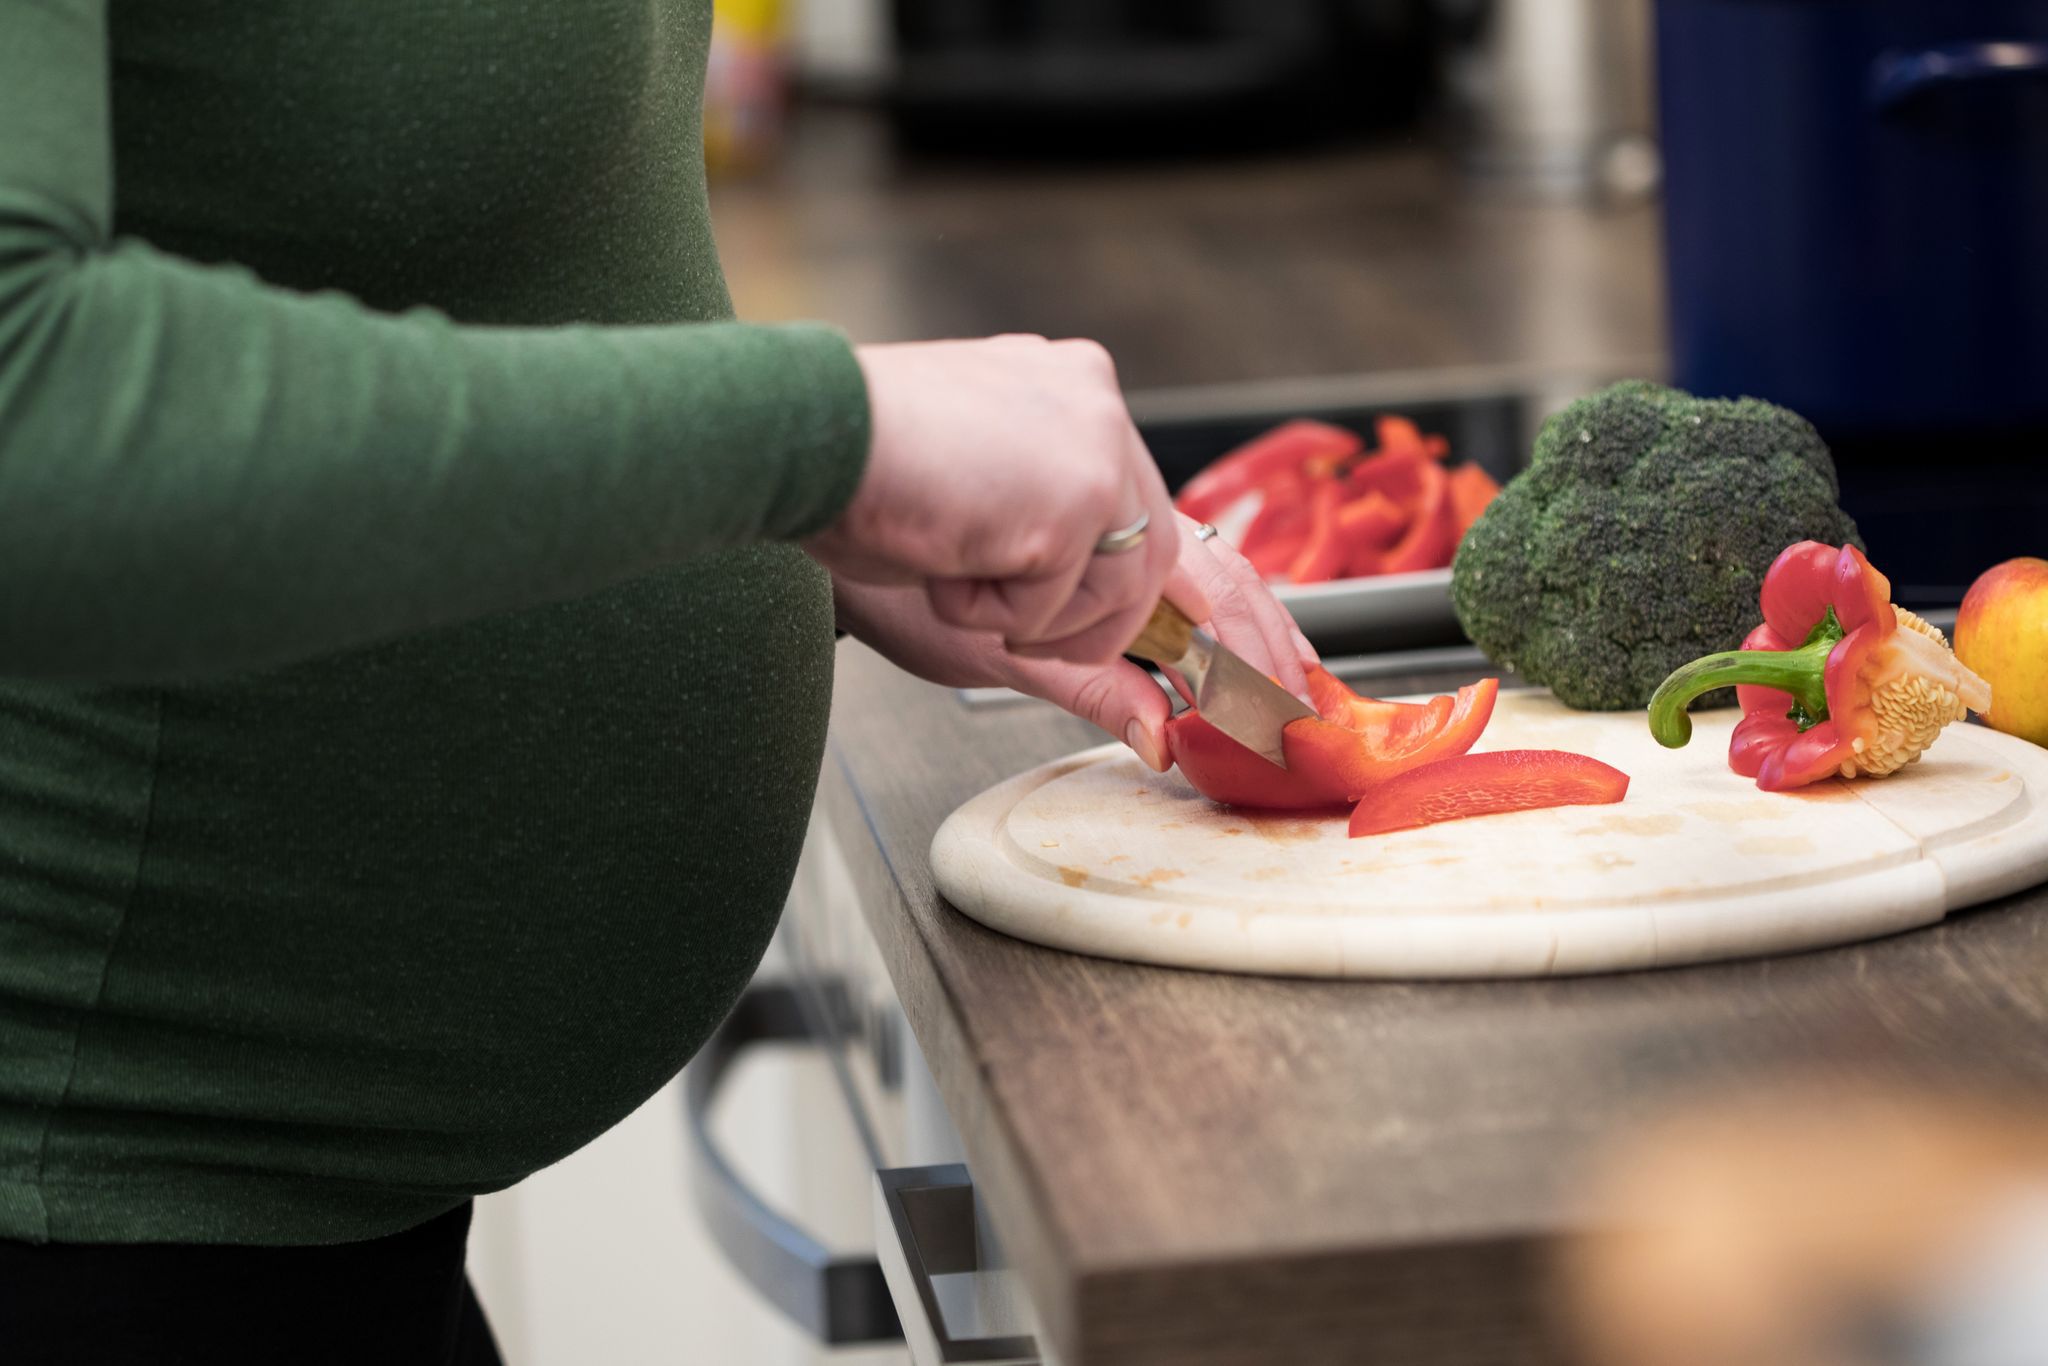 ILUSTRACIÓN - Para las embarazadas veganas y vegetarianas puede ser recomendable consumir suplementos para prevenir un eventual déficit de vitamina B12 en el bebé. Foto: Christin Klose/dpa